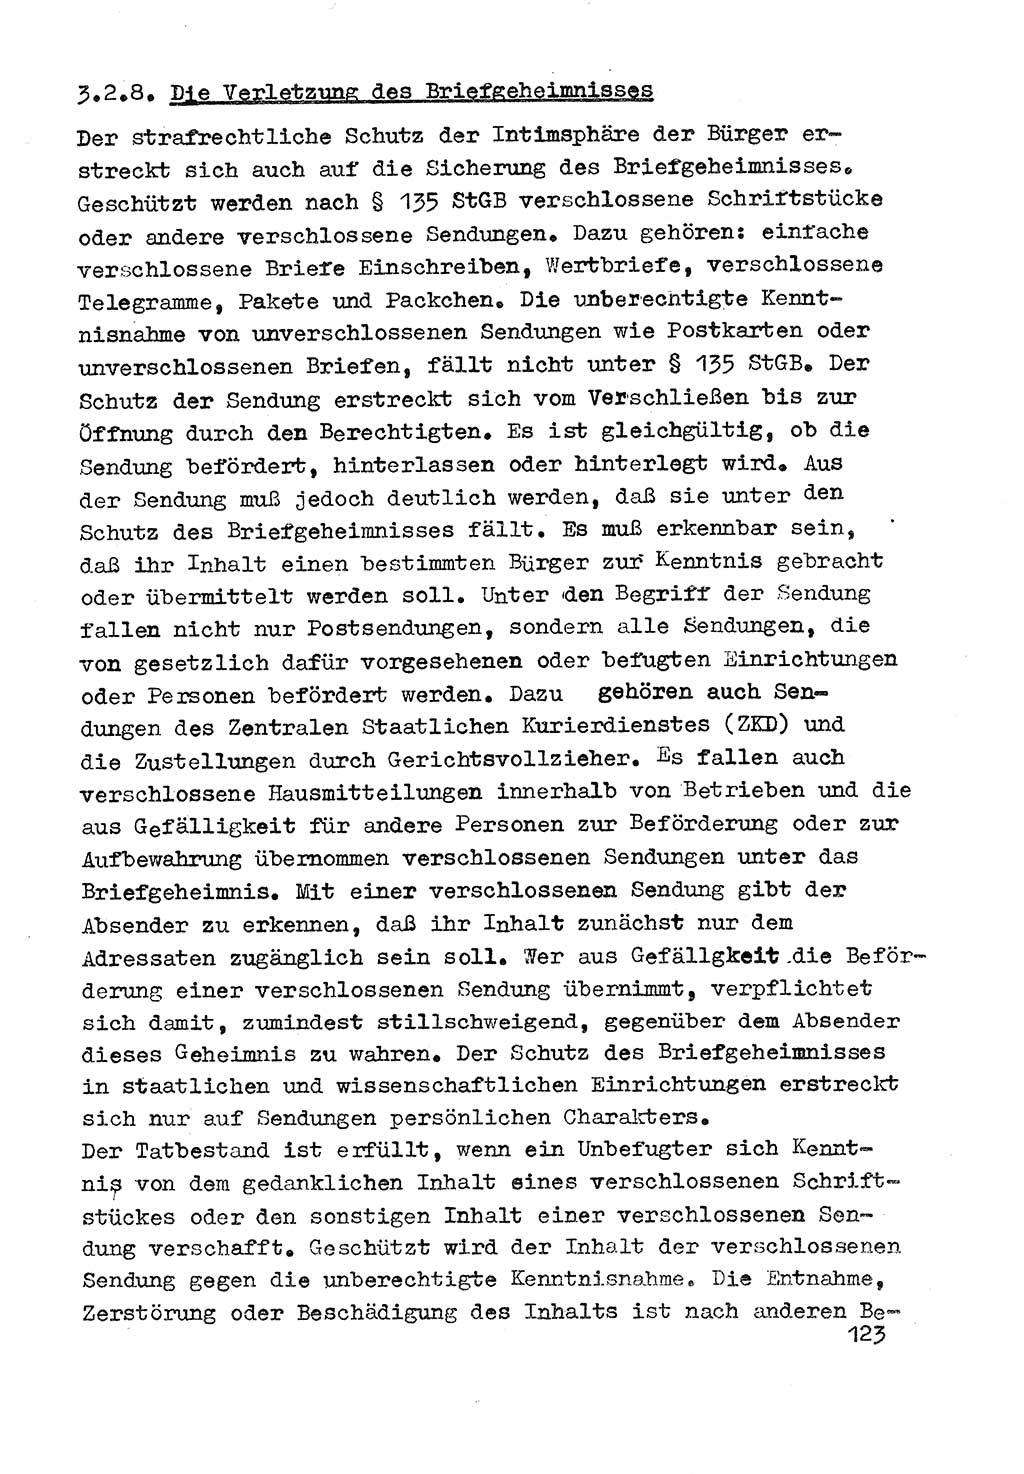 Strafrecht der DDR (Deutsche Demokratische Republik), Besonderer Teil, Lehrmaterial, Heft 3 1969, Seite 123 (Strafr. DDR BT Lehrmat. H. 3 1969, S. 123)